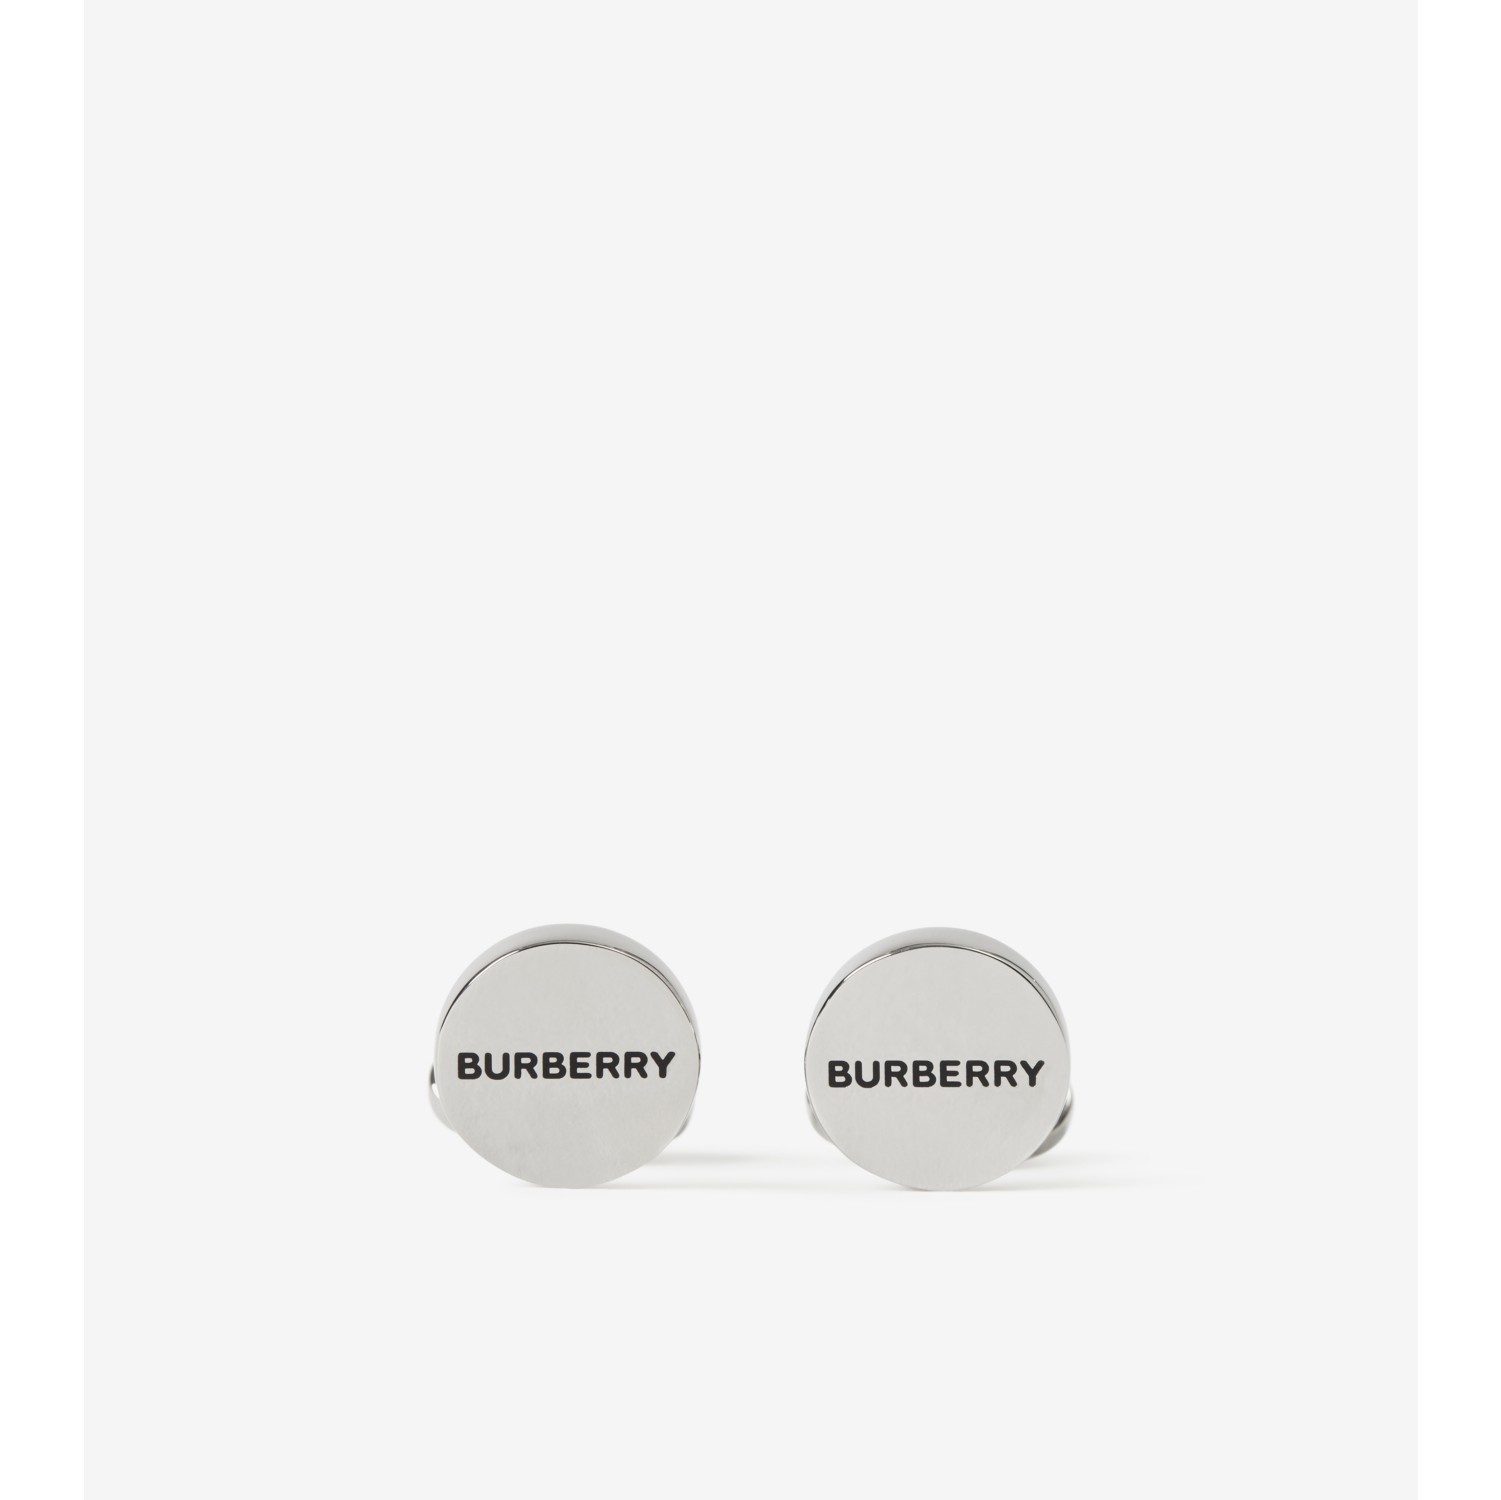 Palladium-beschichtete Manschettenknöpfe mit Burberry-Logo